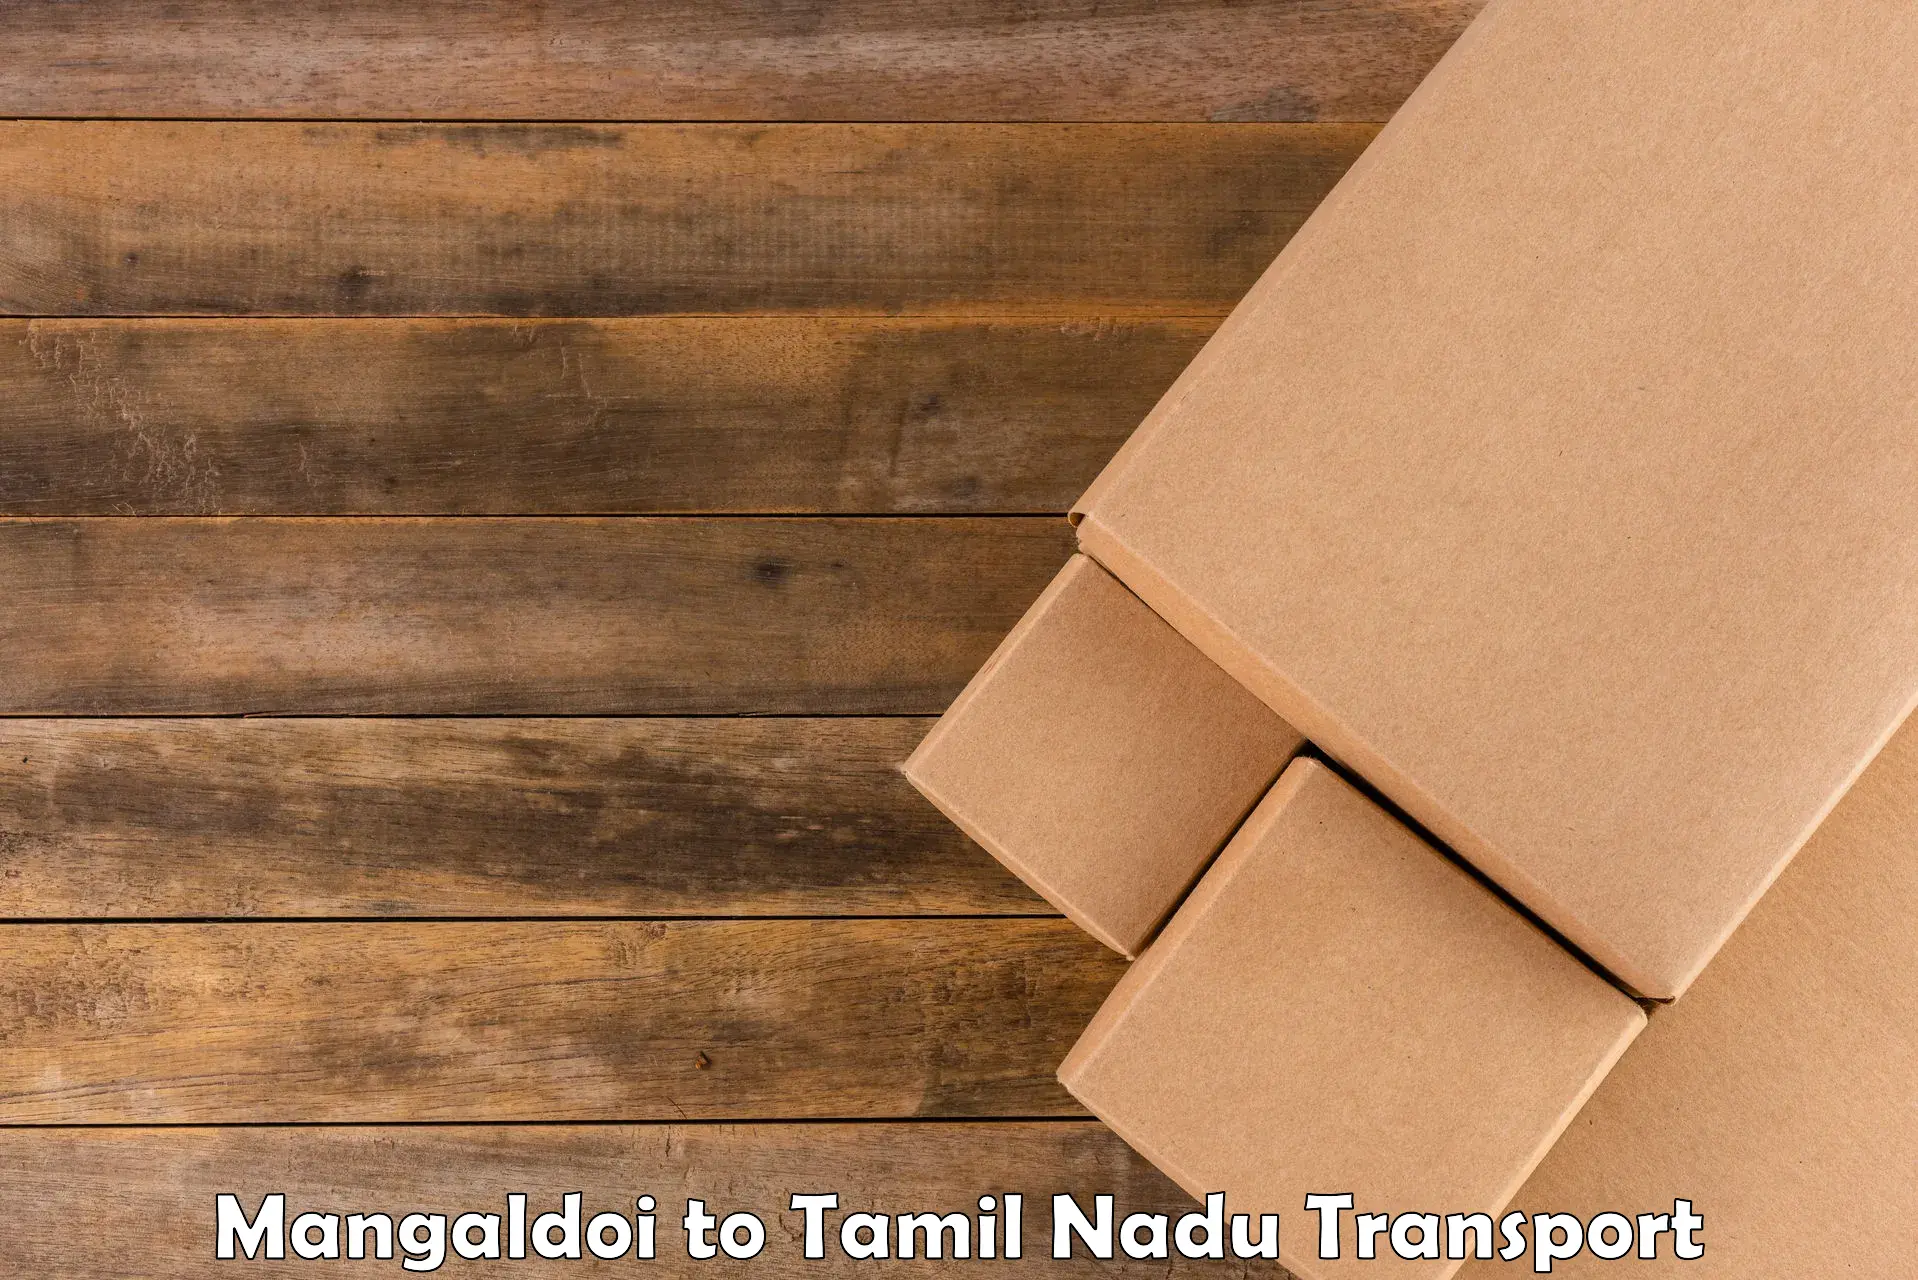 Air freight transport services Mangaldoi to Chennai Port